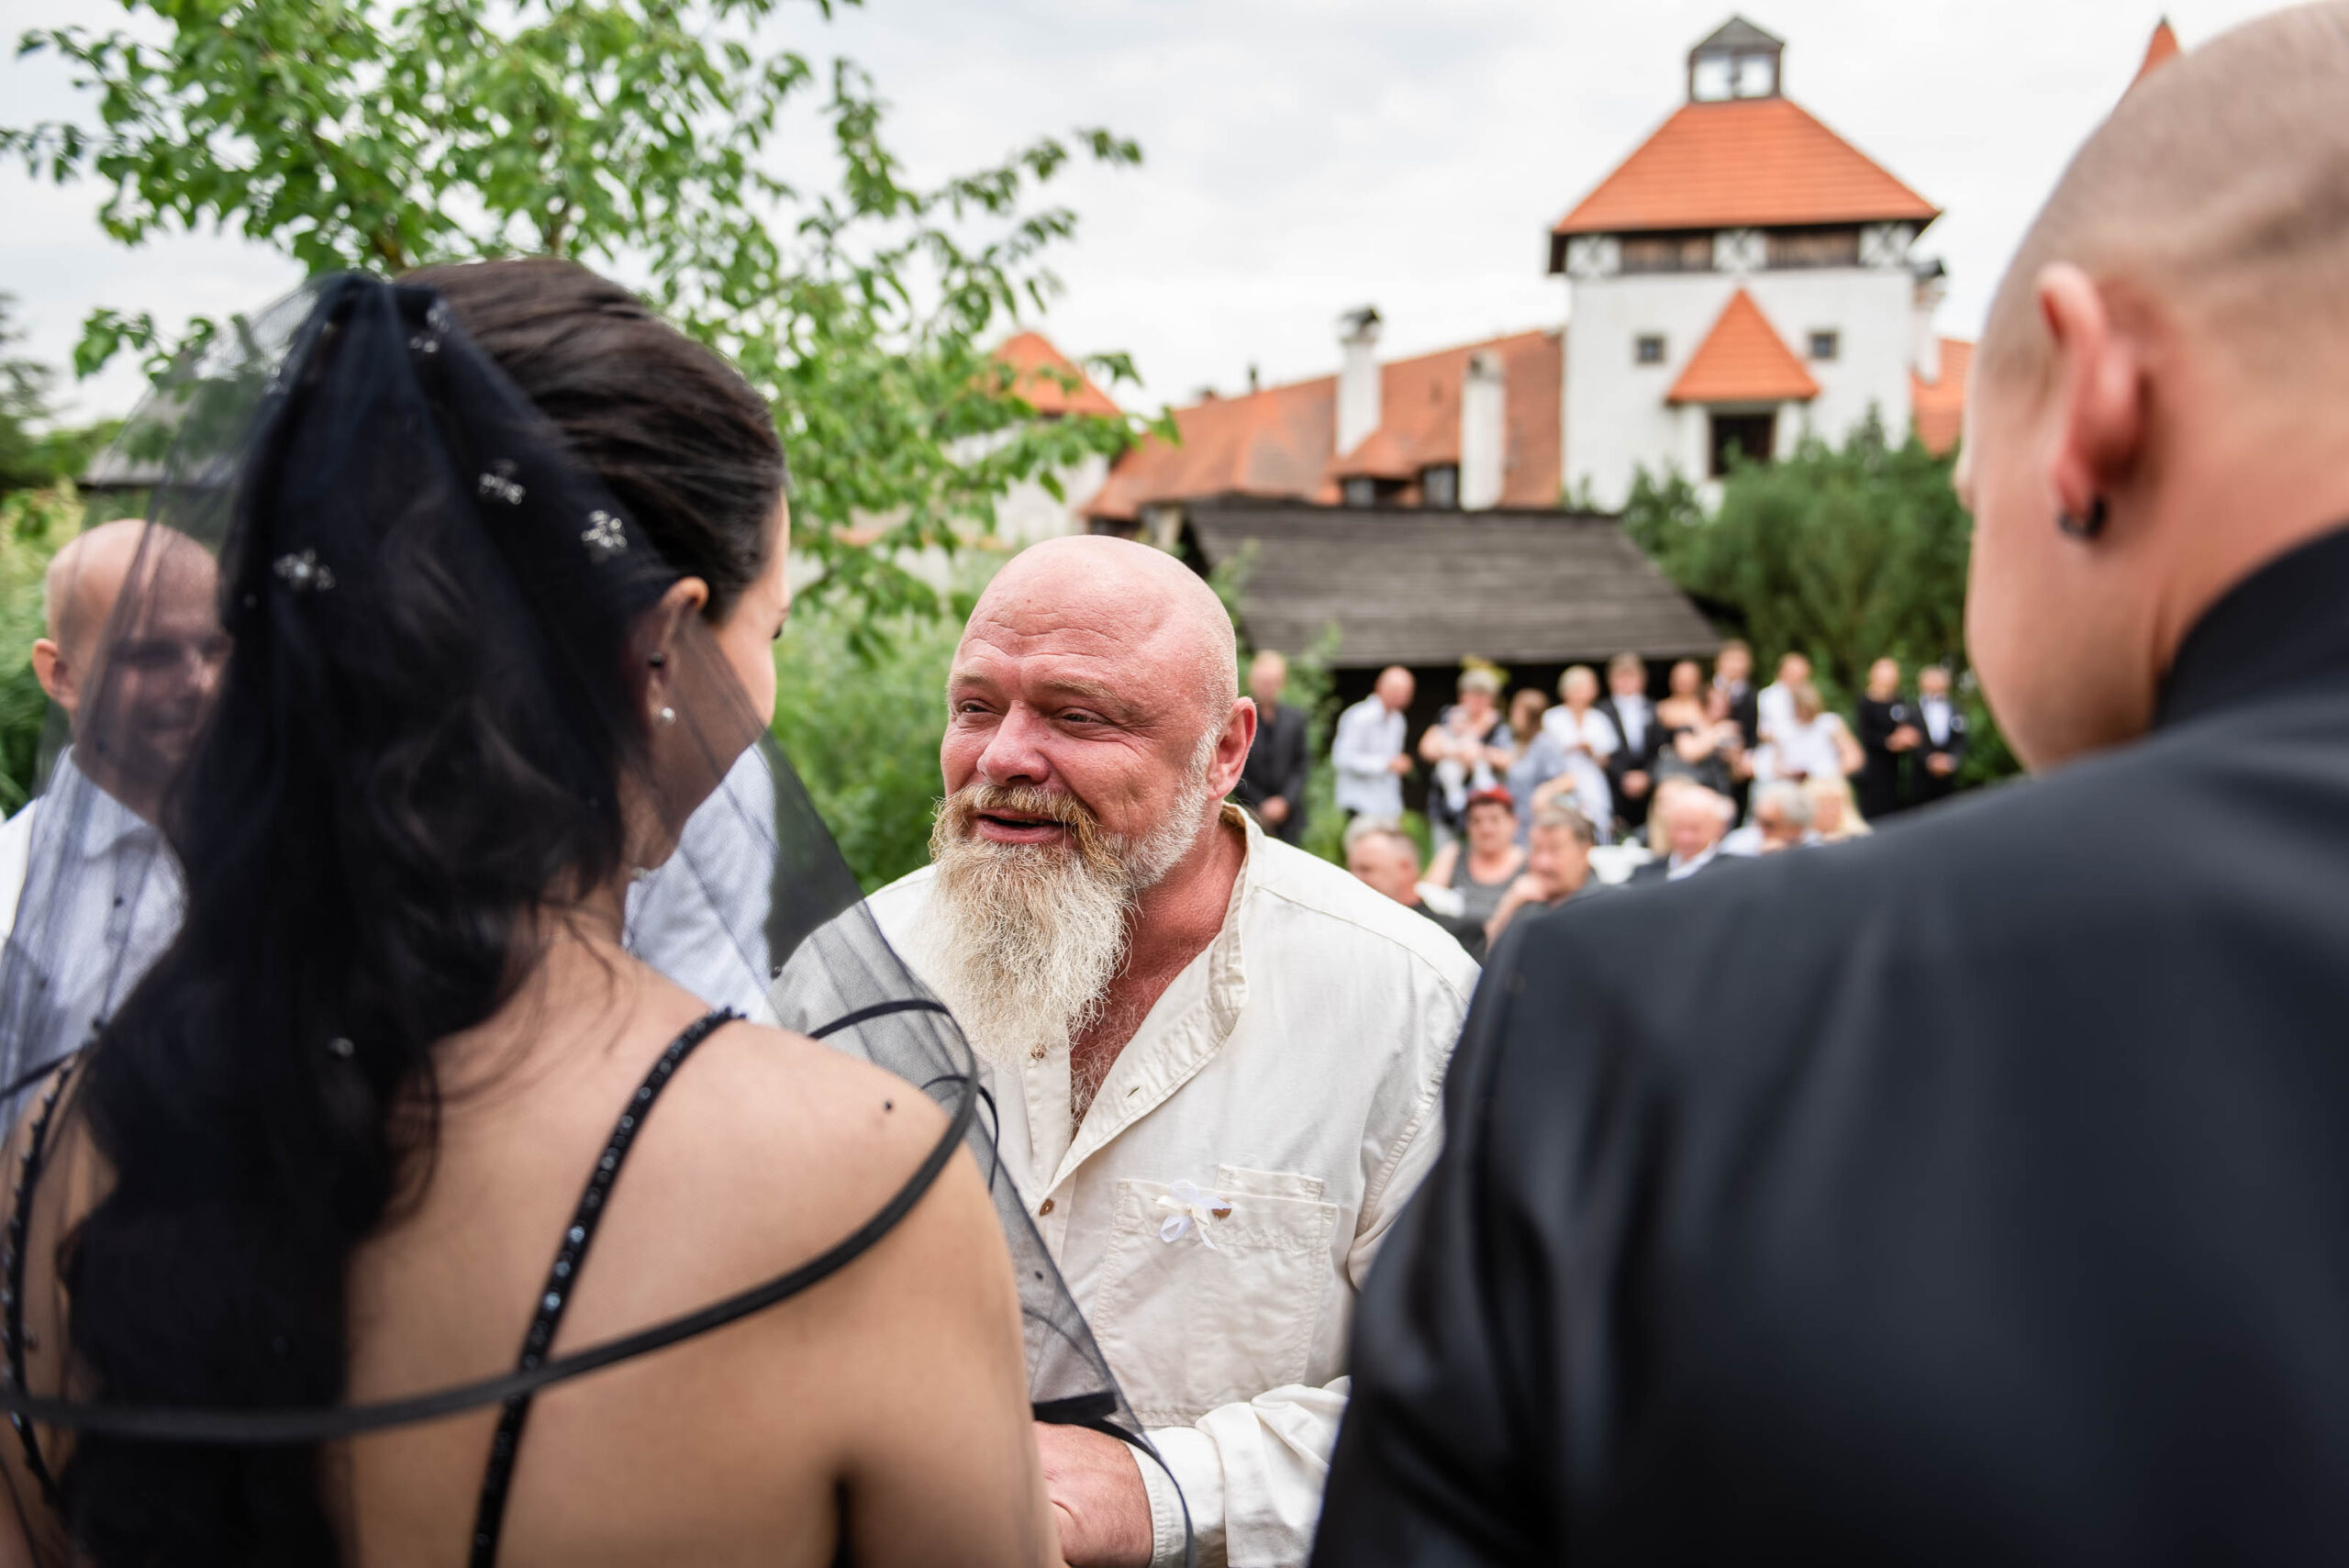 Svatební focení na hradě Červený Újezd | Svatební fotograf | Patrik Schöber